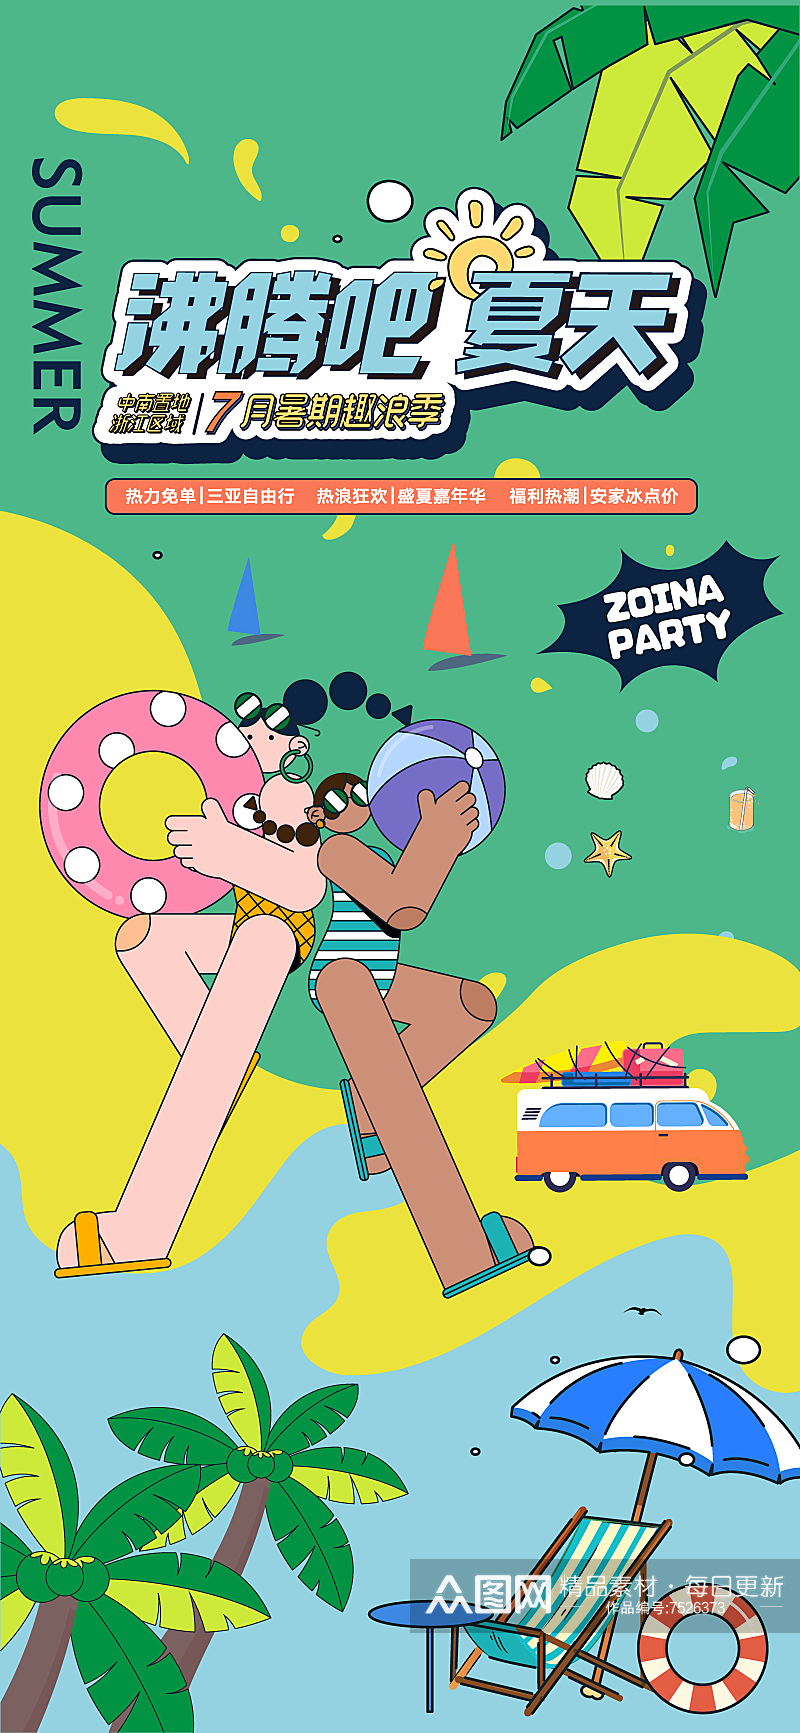 彩色夏季派对宣传海报设计素材